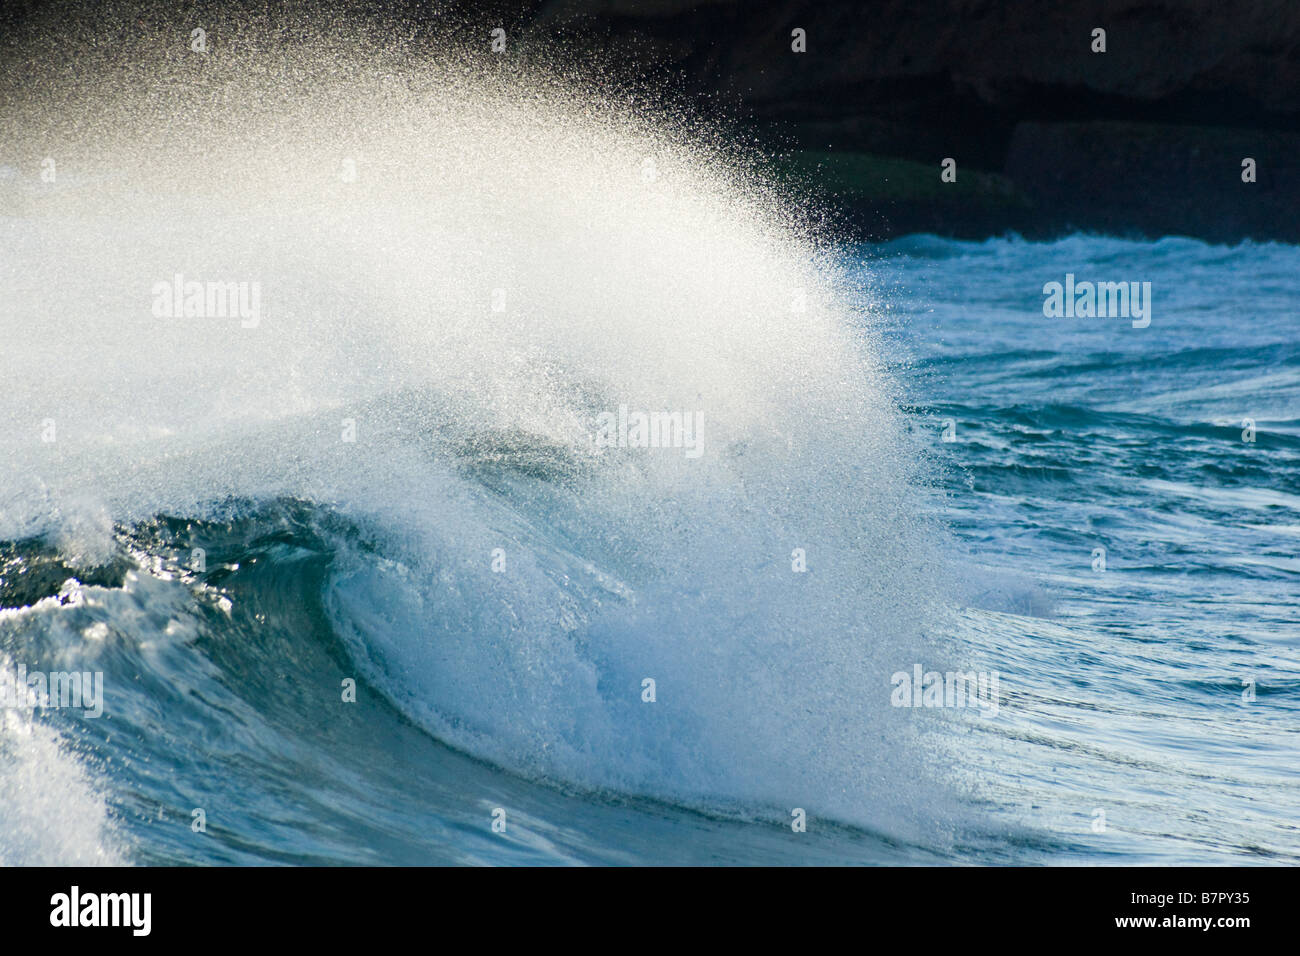 Wave crashing Stock Photo